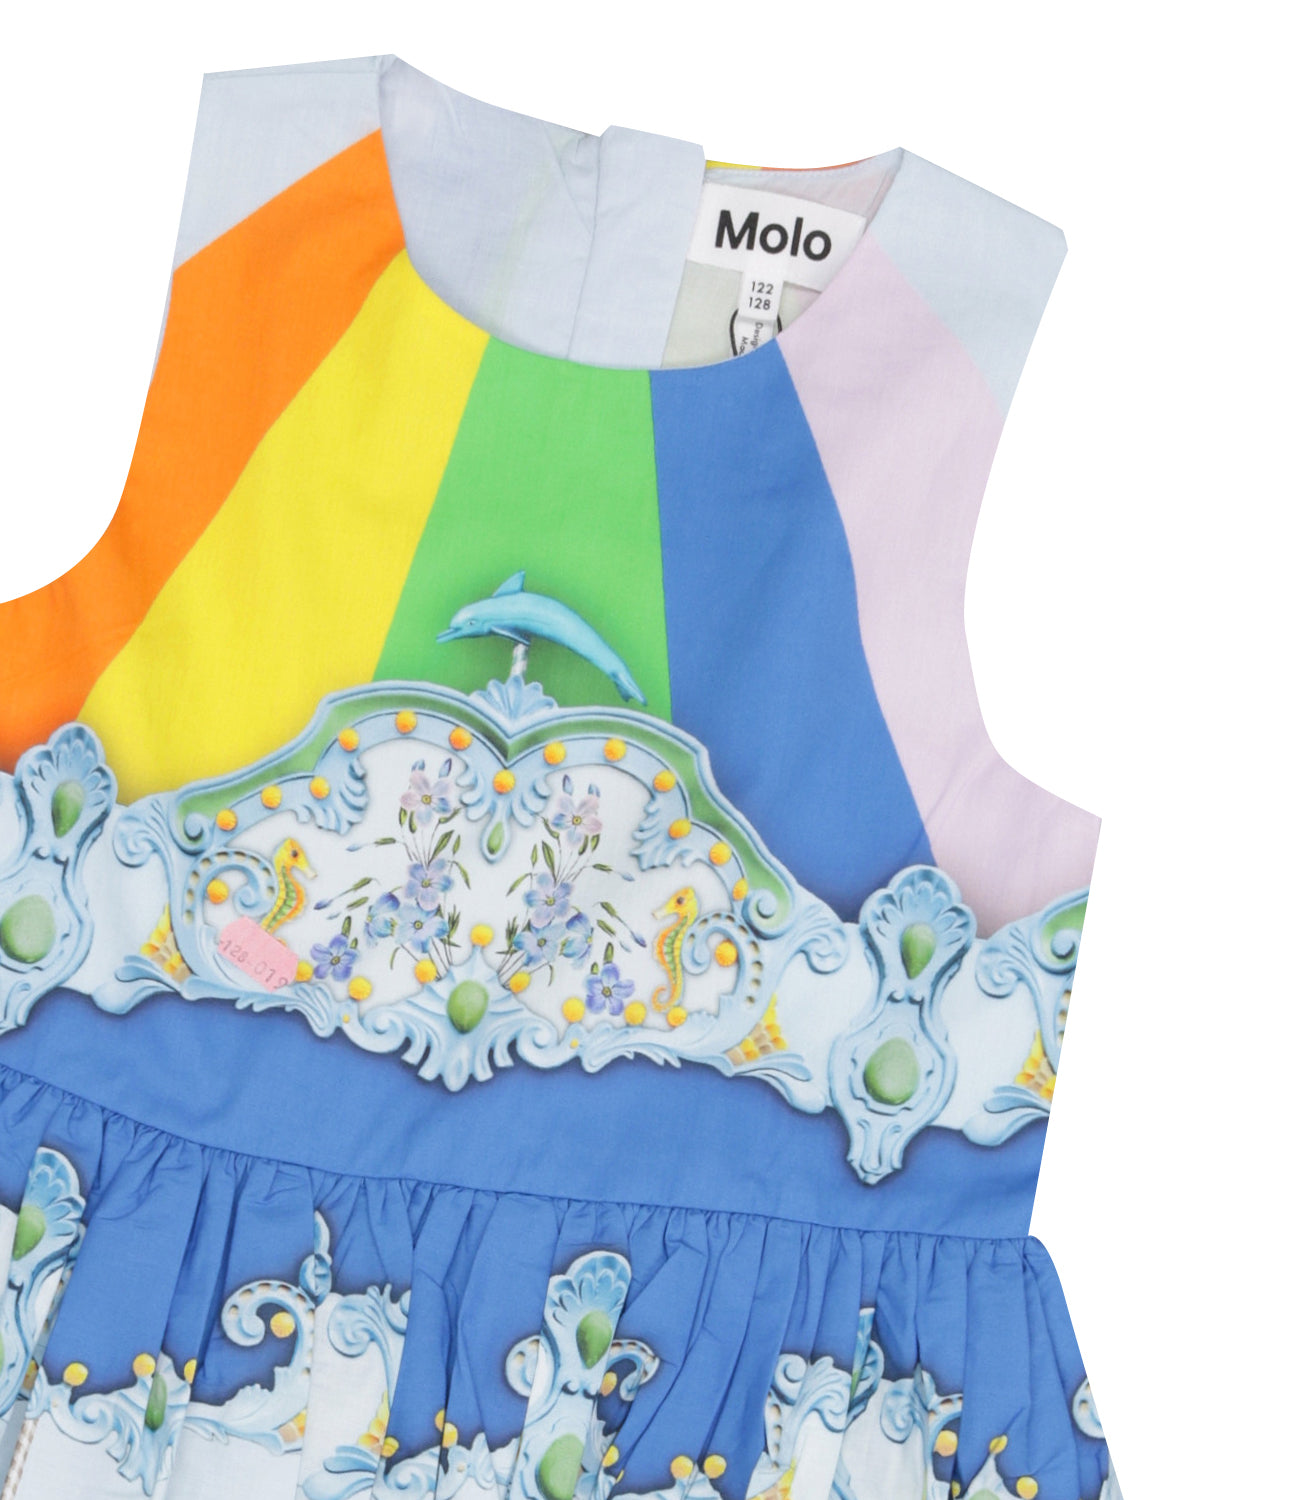 Molo | Multicolor Dress